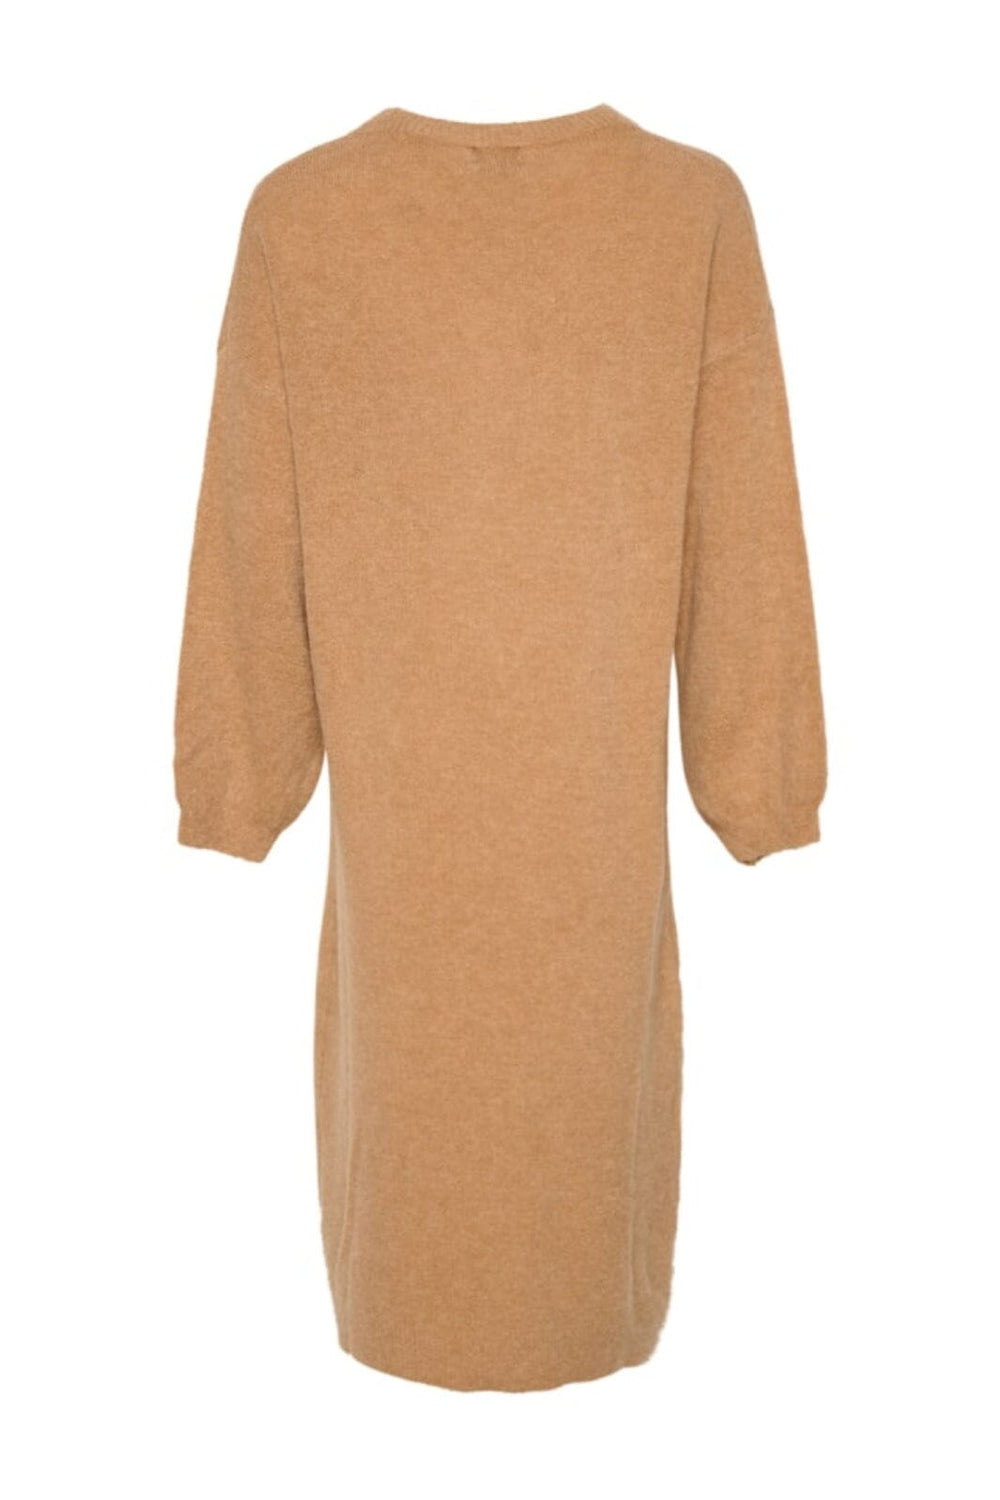 Noella - Penn Knit Dress - Camel 